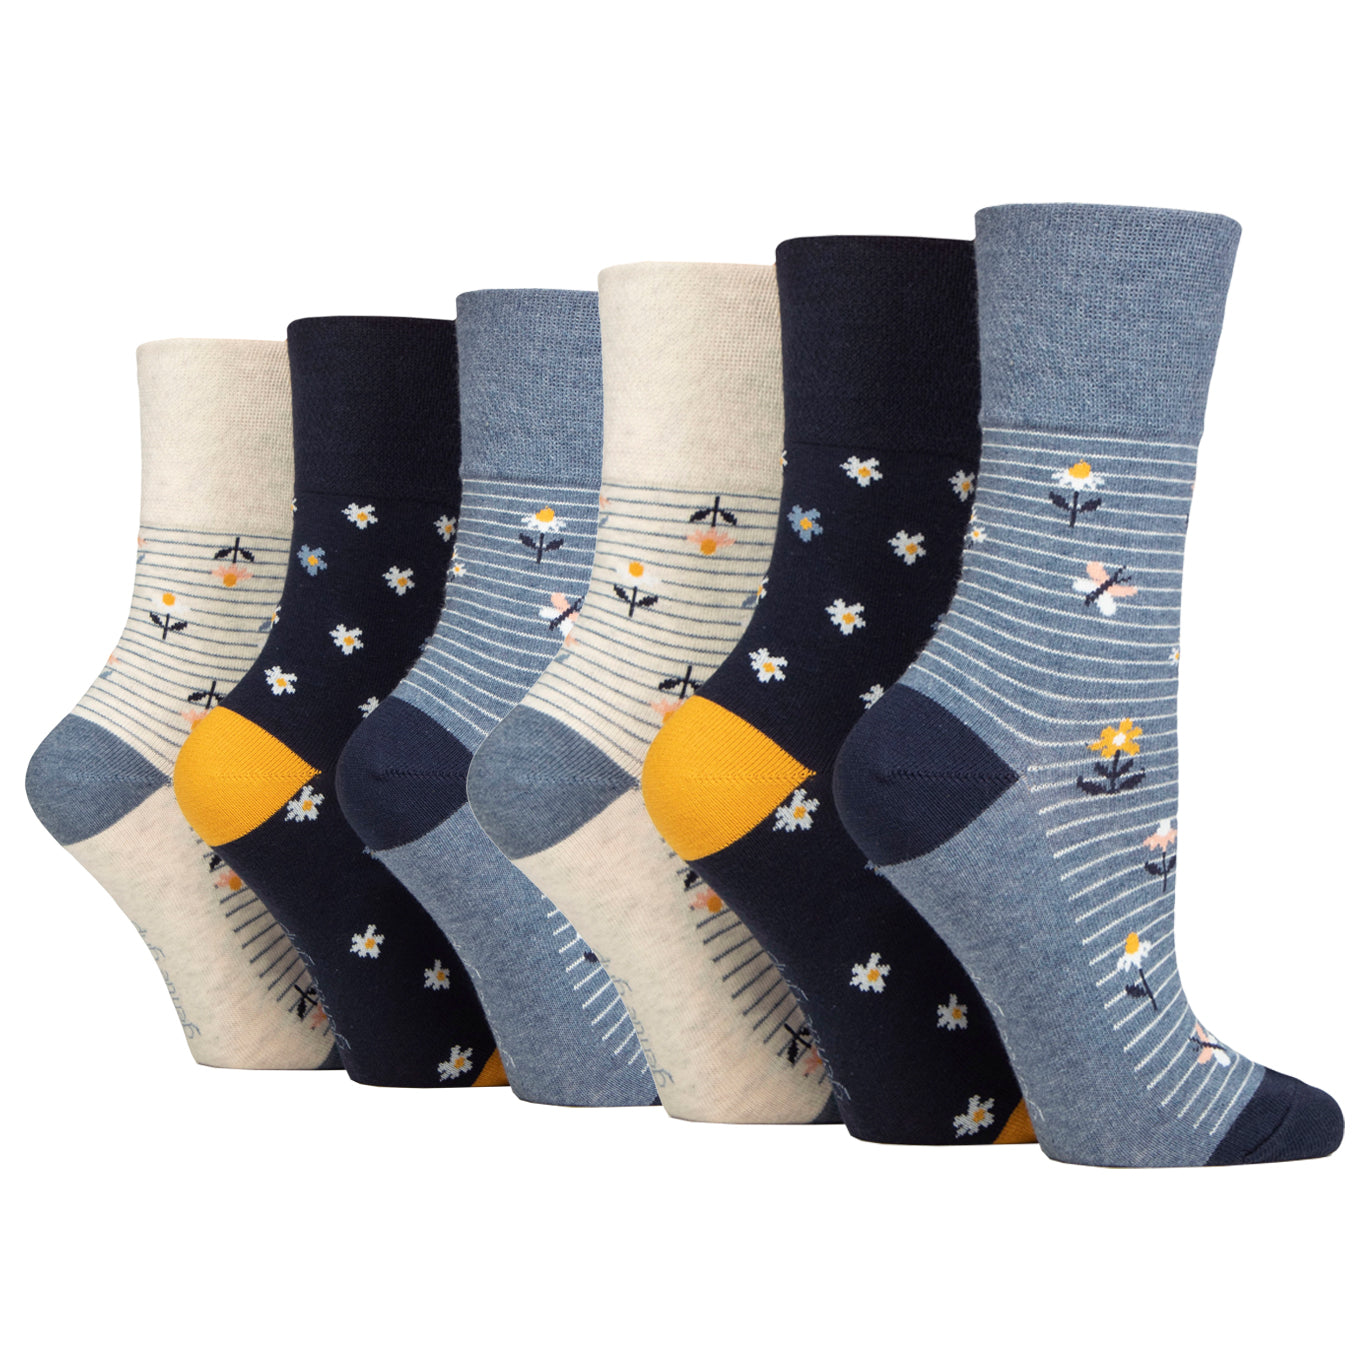 6 Pairs  Ladies Gentle Grip Cotton Socks - Daisies And Butterflies